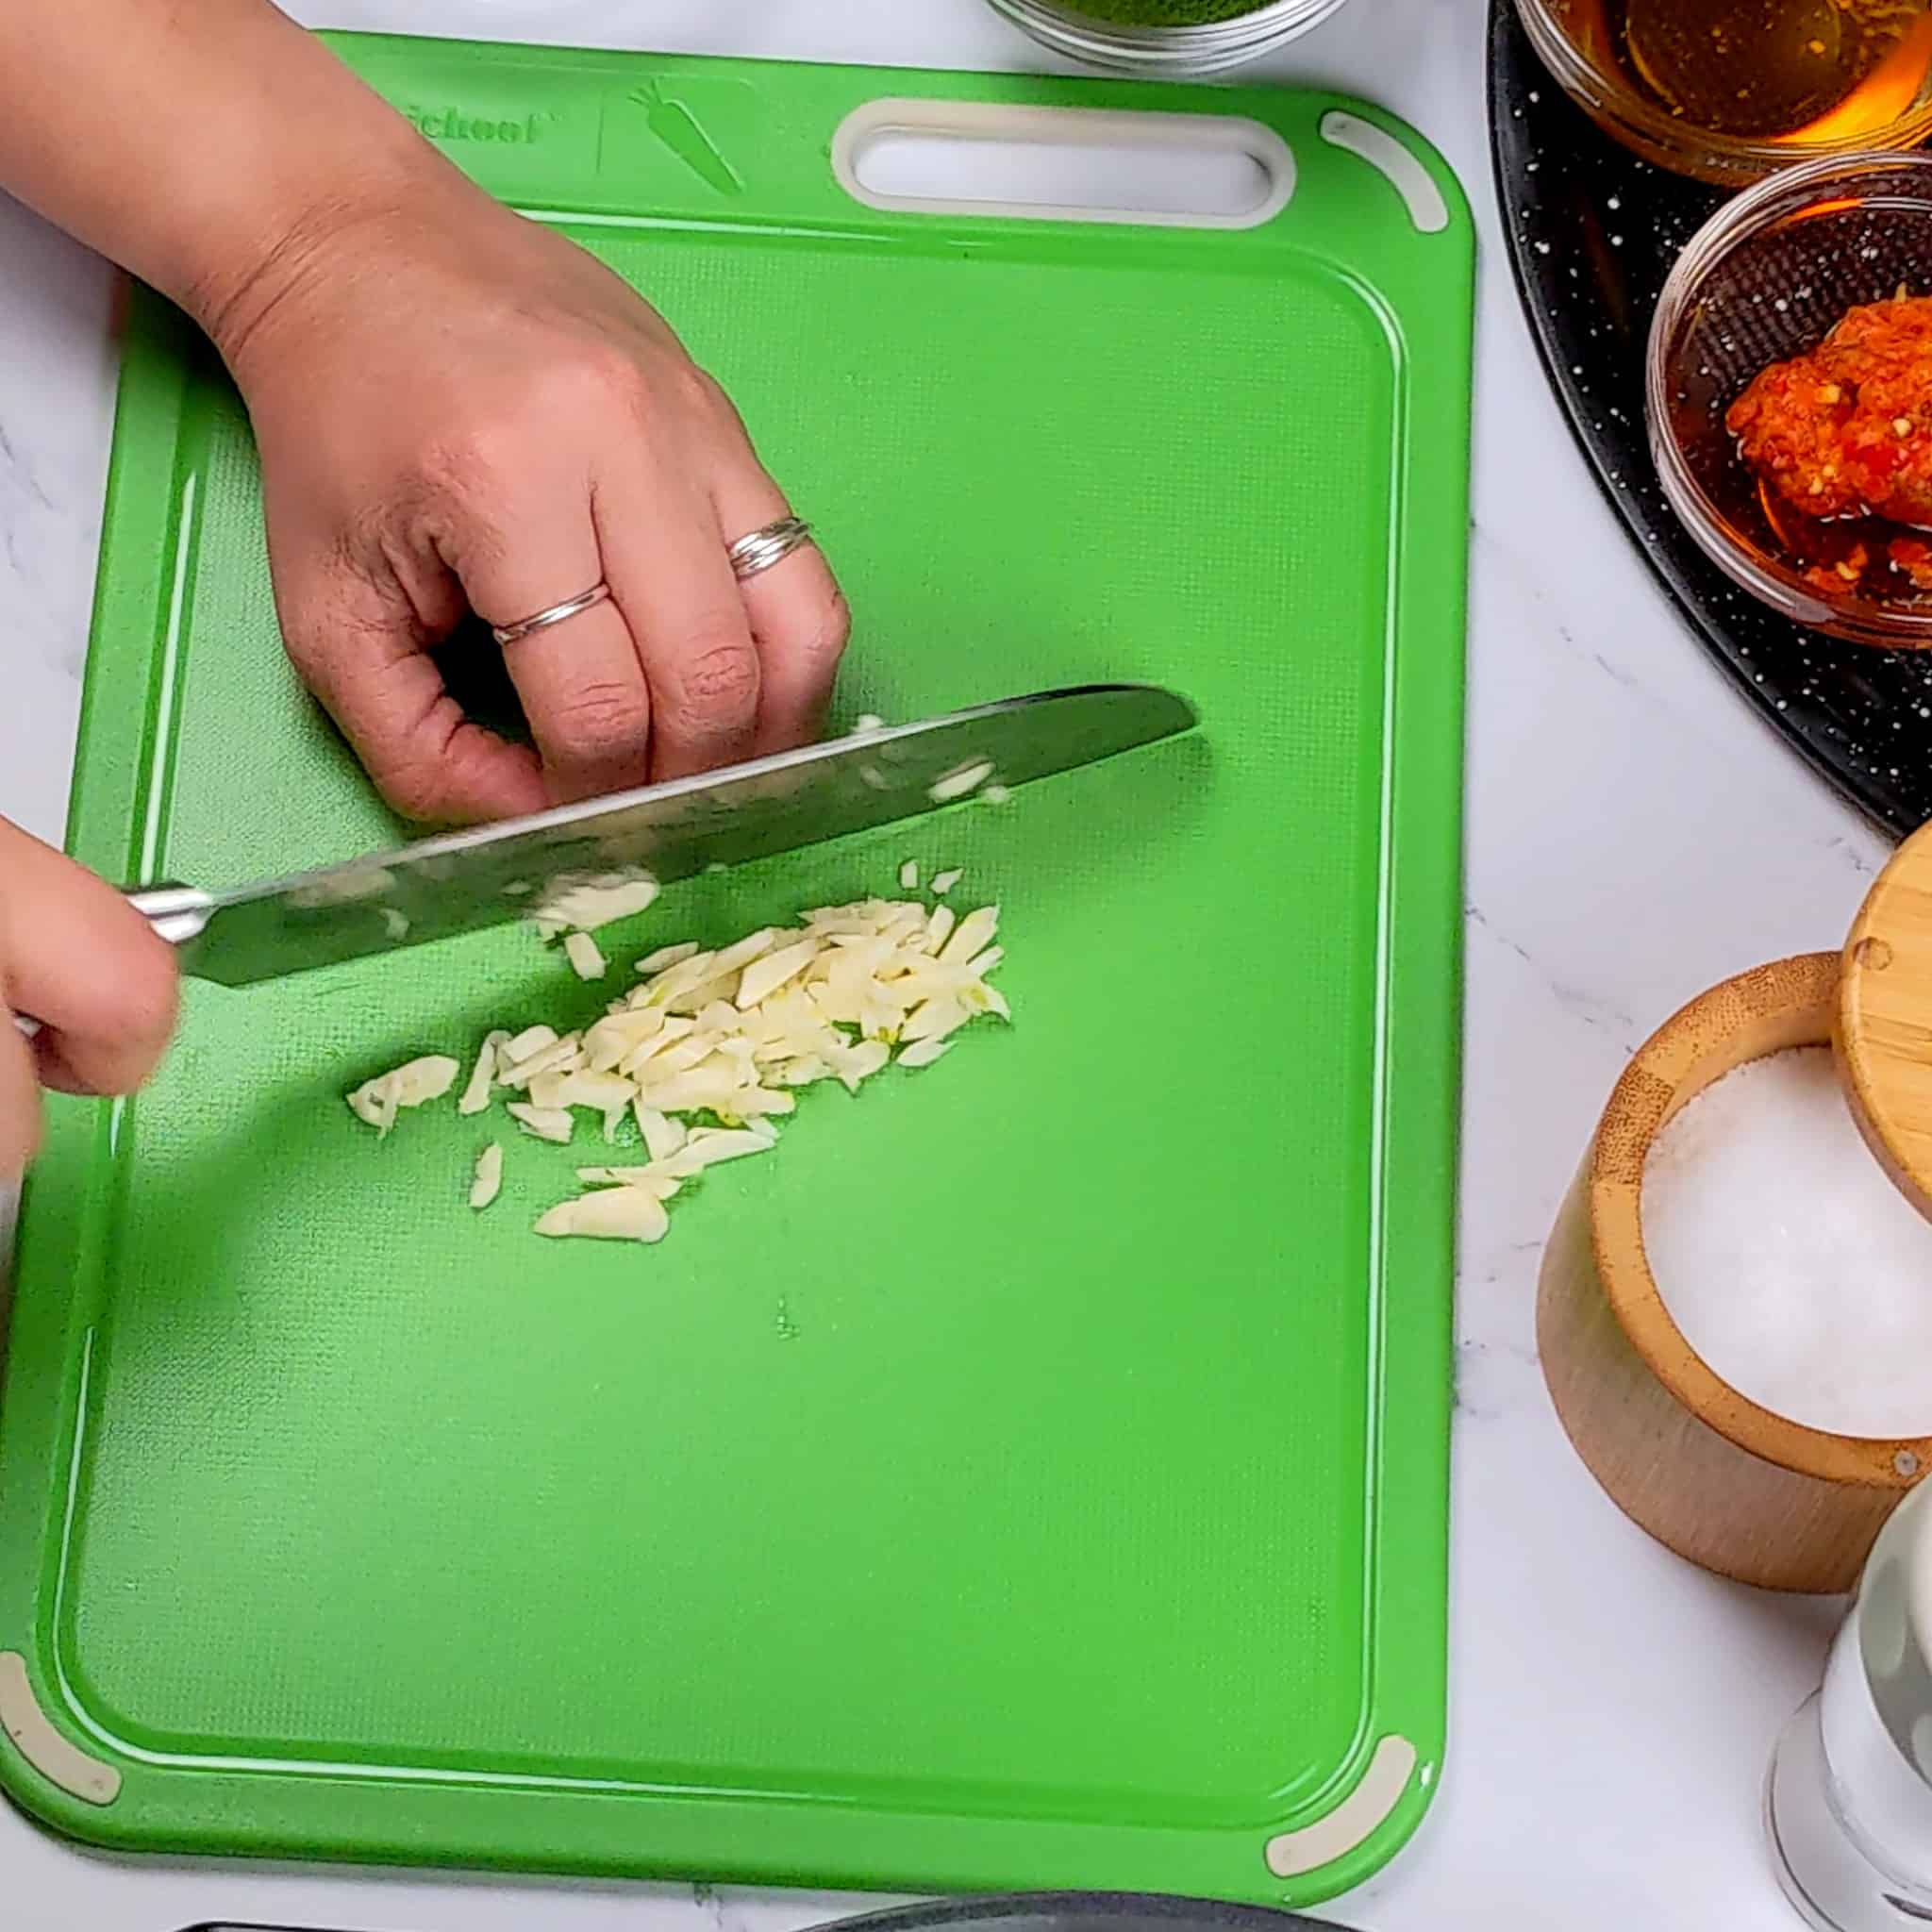 a knife chopping garlic on a plastic cutting board.